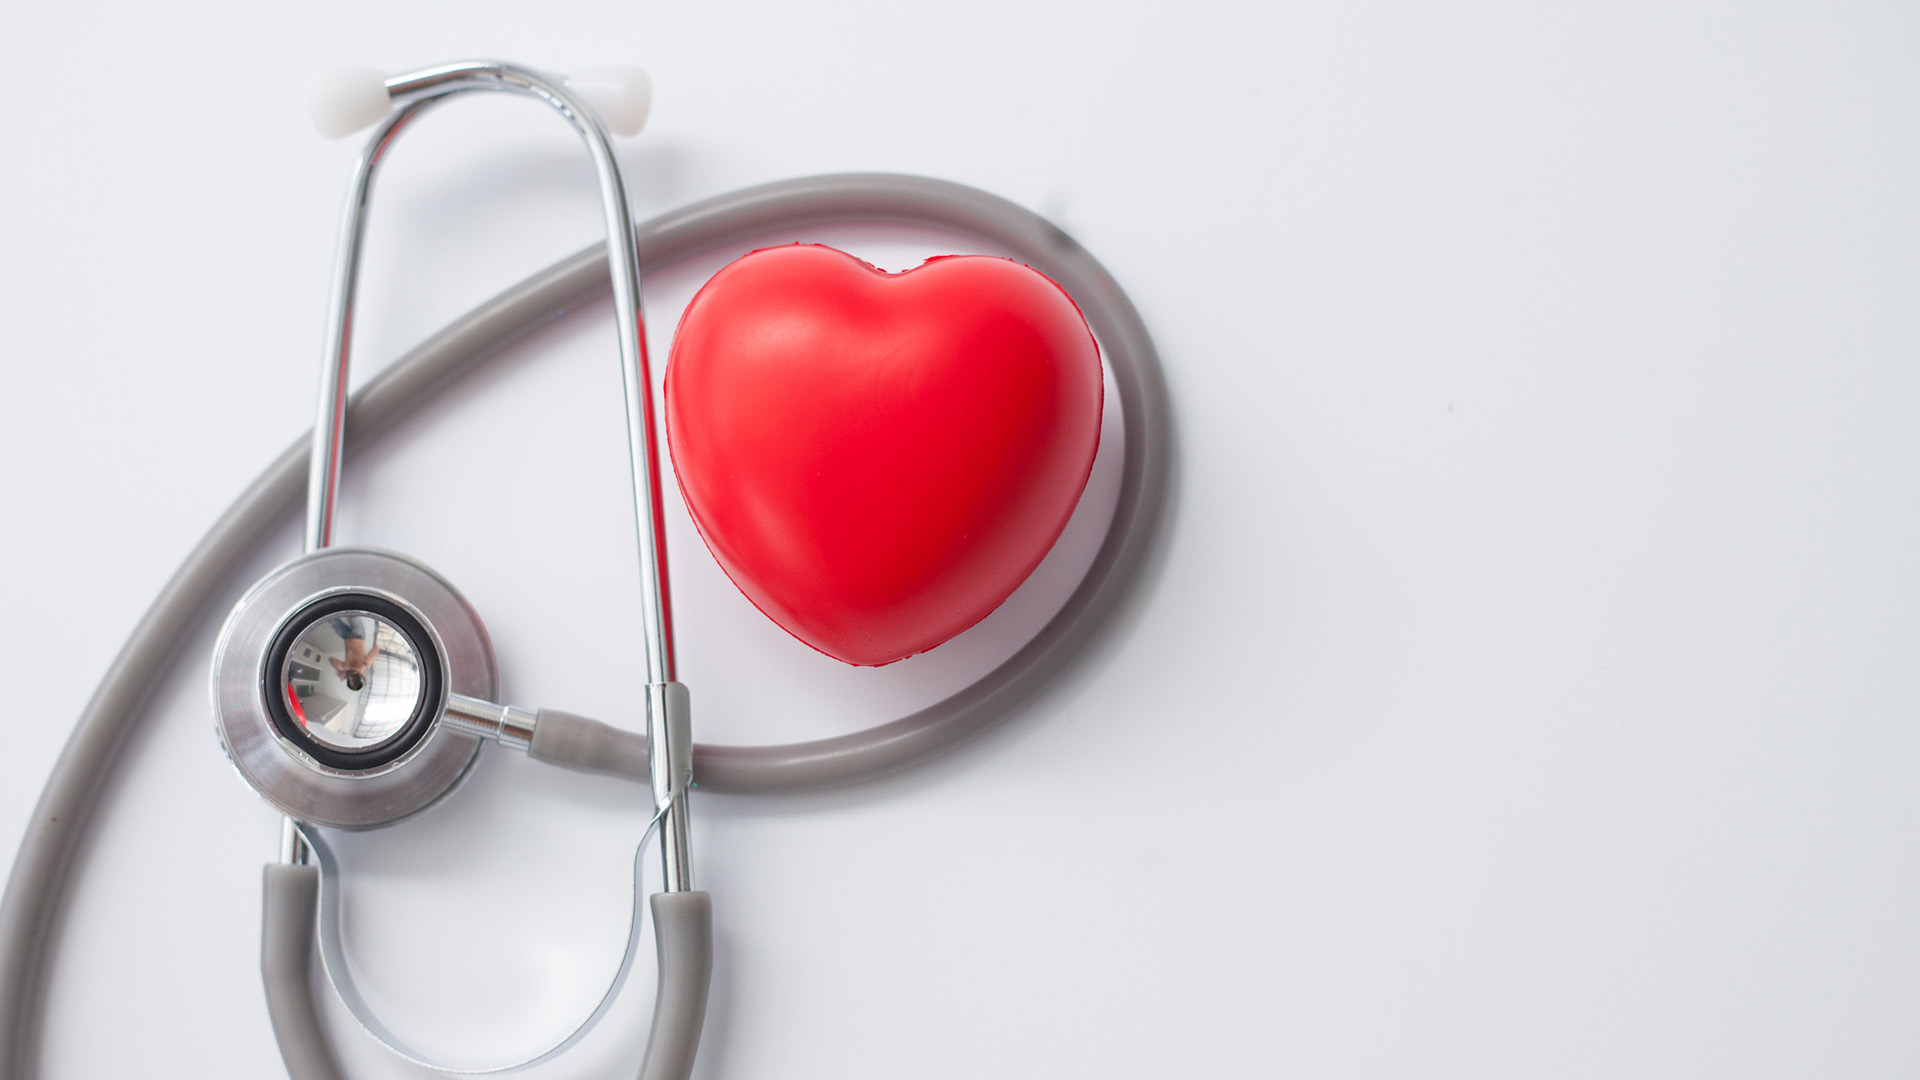 Cuando no se diagnostica ni se trata, la presión arterial alta puede causar enfermedades cardiovasculares